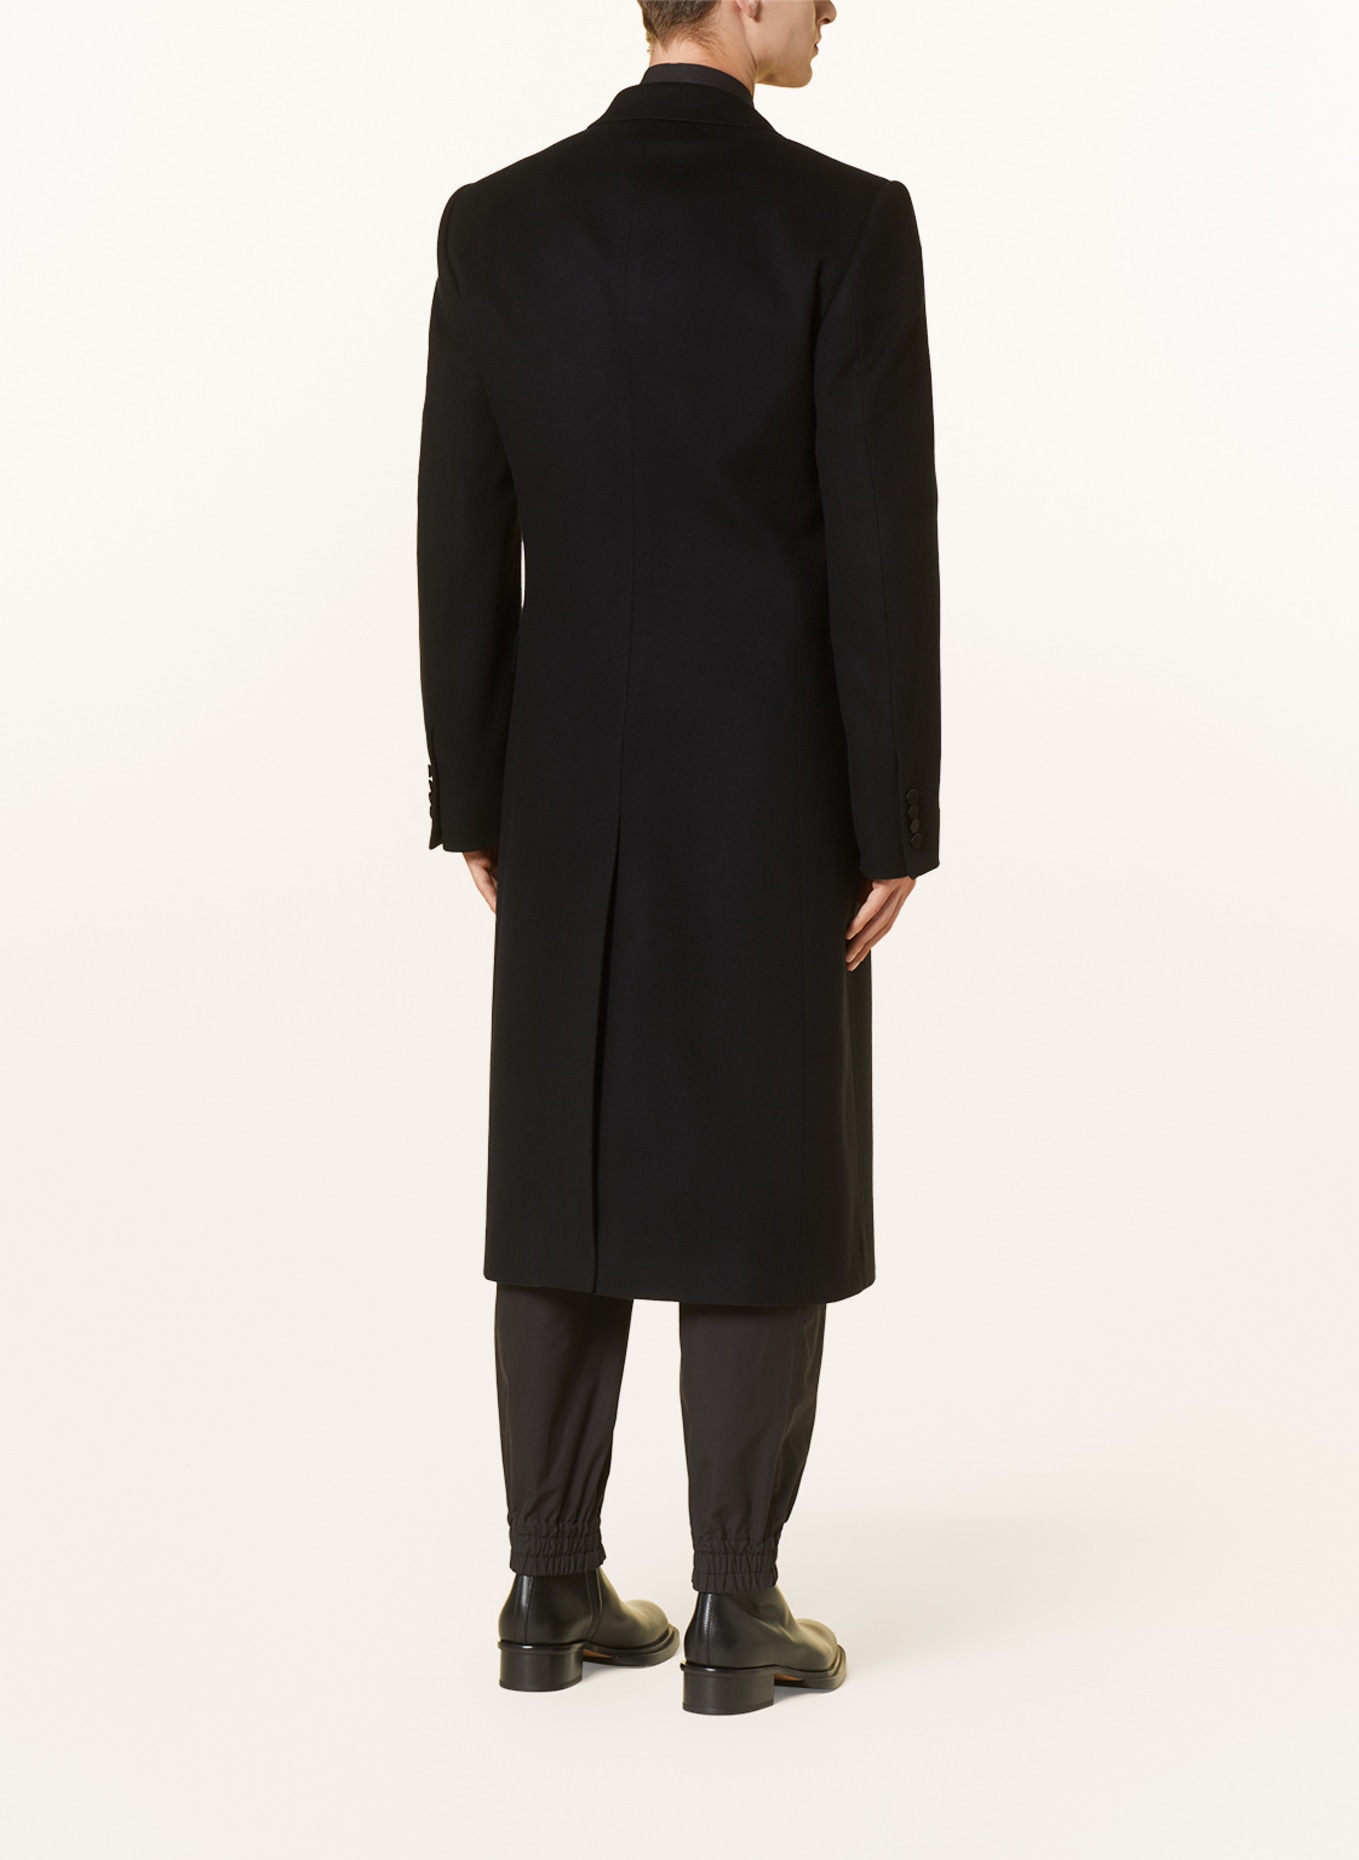 Alexander McQUEEN Wool coat, Color: BLACK (Image 3)